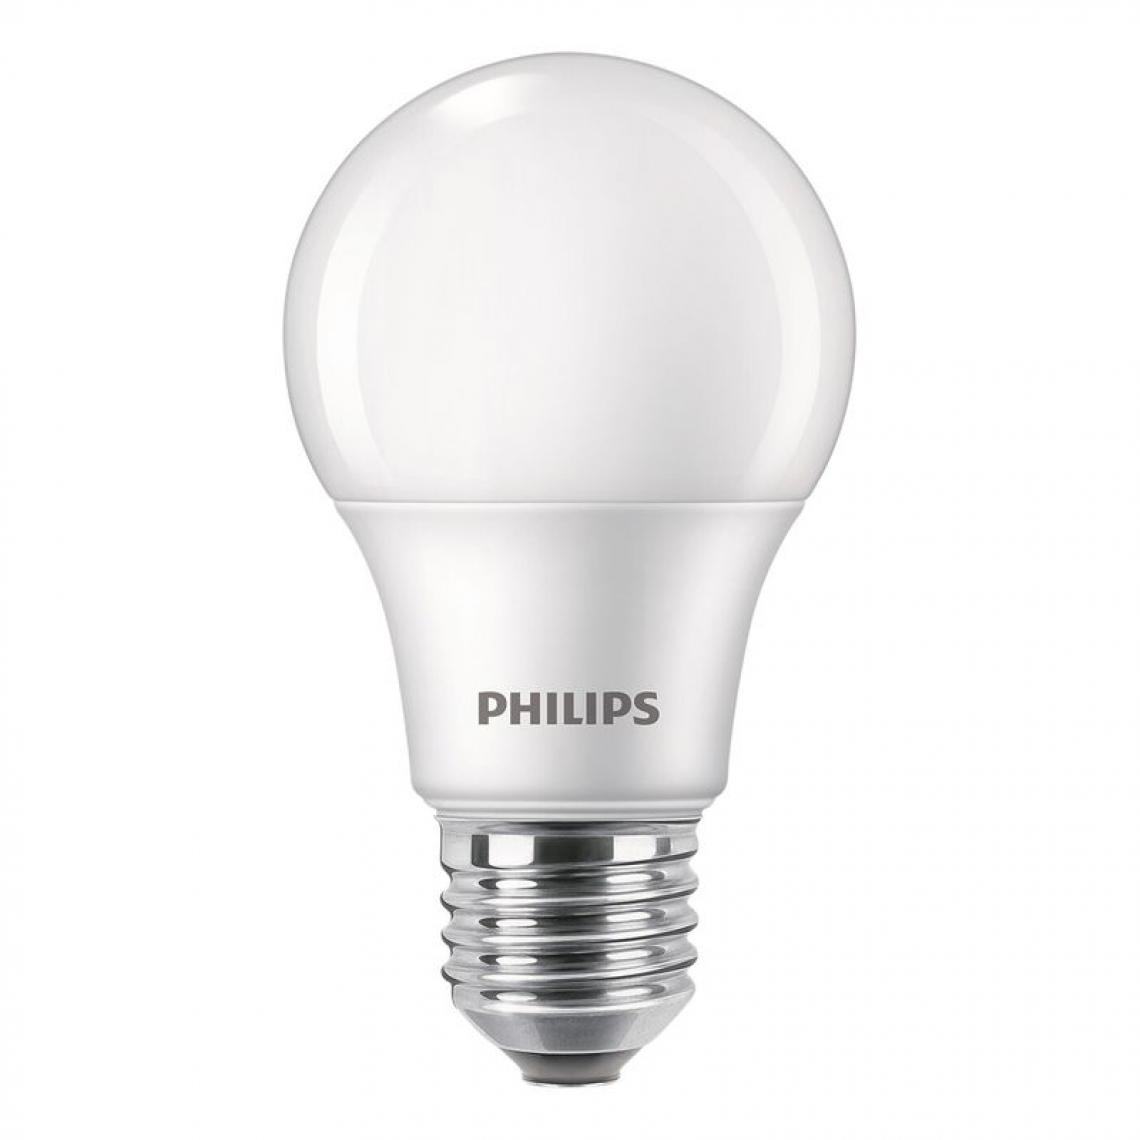 But - 4 LED standard 60W E27 LOT AMPOULES blanc chaud - Ampoules LED